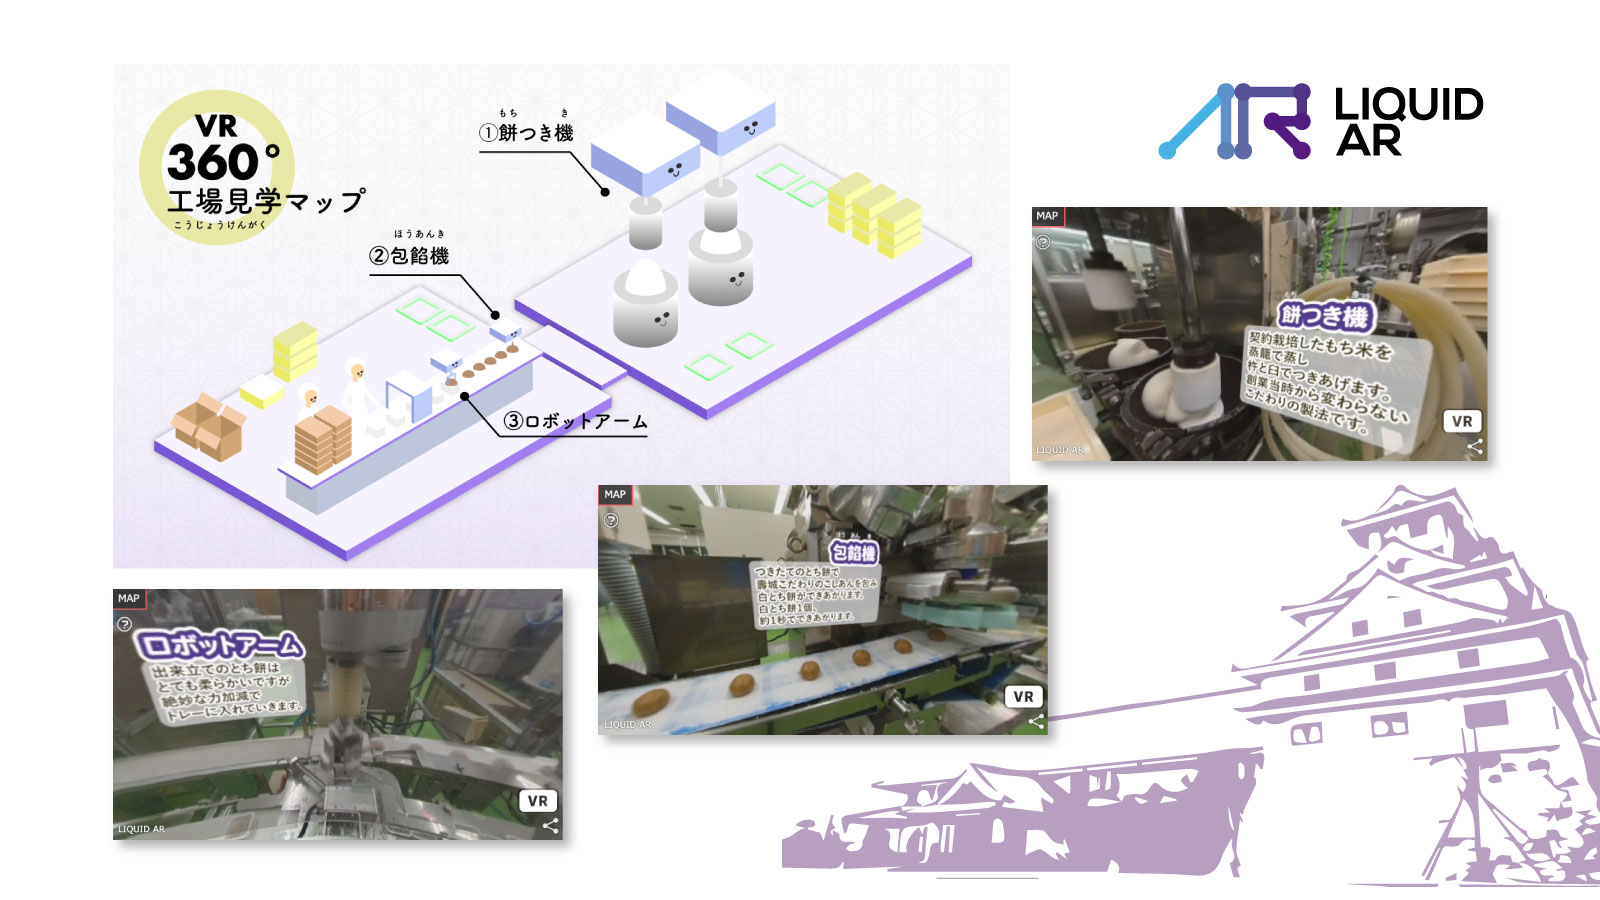 【LIQUID AR】導入事例：お菓子の壽城 VR360°工場見学